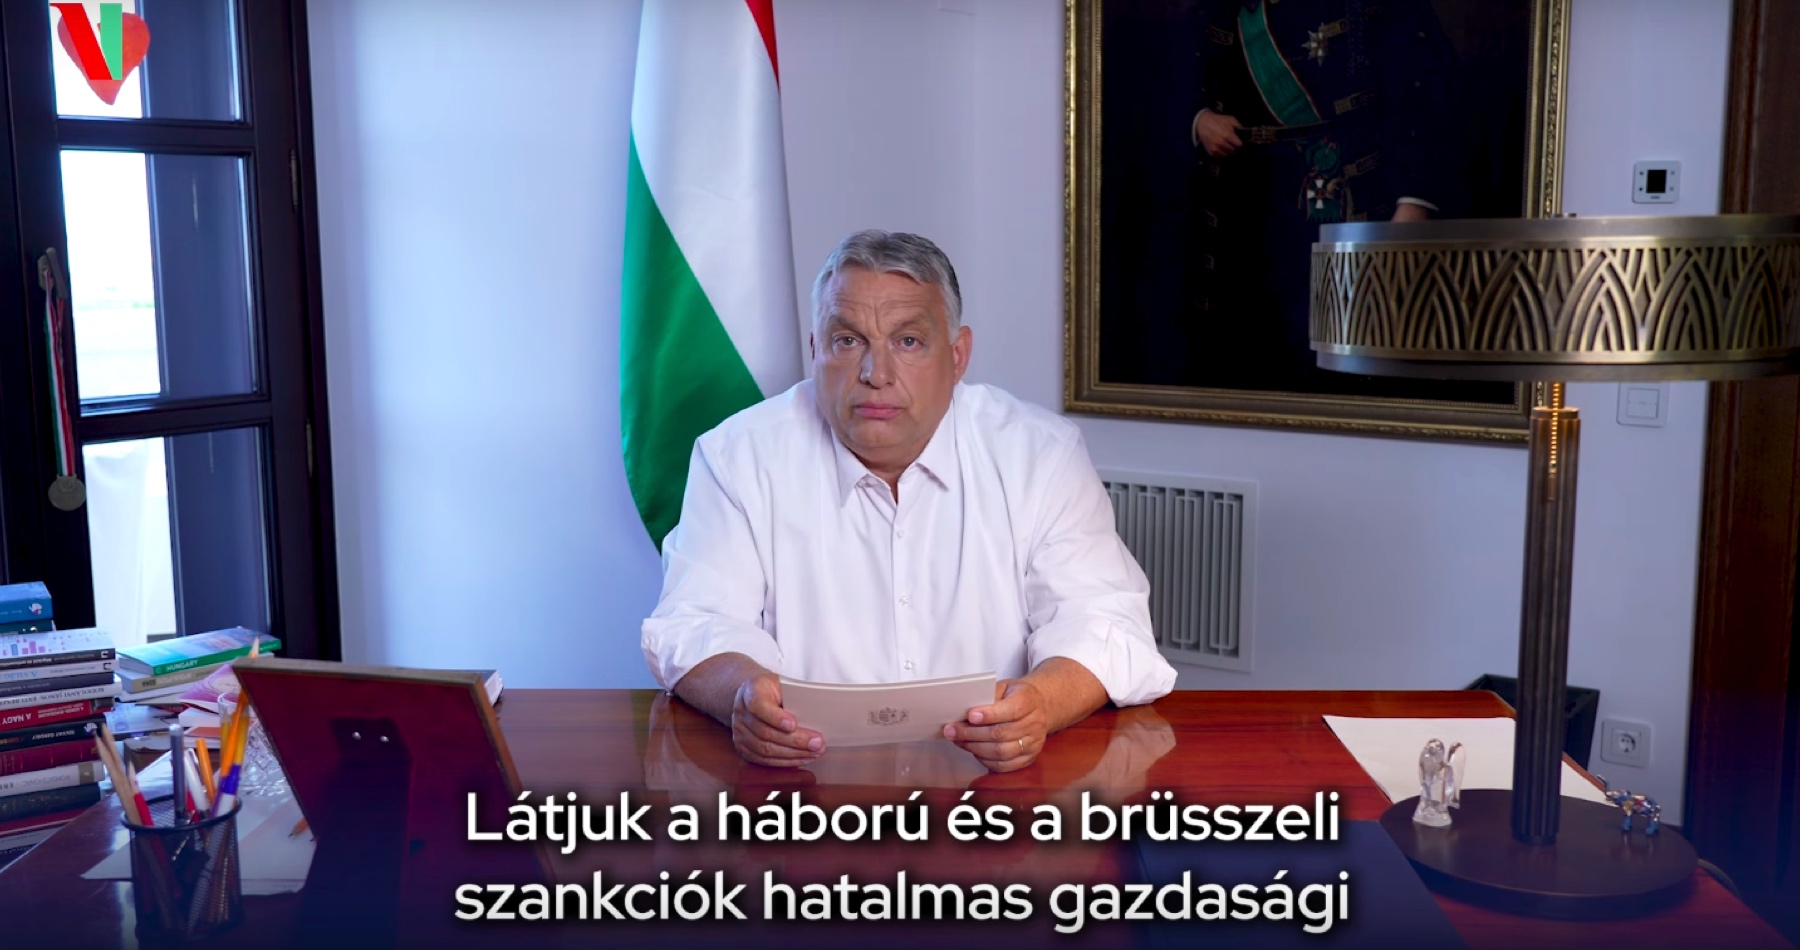 VIDEO: Orbán vyhlásil v Maďarsku stav vojnovej hrozby v obave pred ohrozením fyzickej a energetickej bezpečnosti rodín a ekonomiky: „Vidíme, že bruselské sankcie vedú k obrovskému ekonomickému rozvratu a k drastickému zvyšovaniu cien“